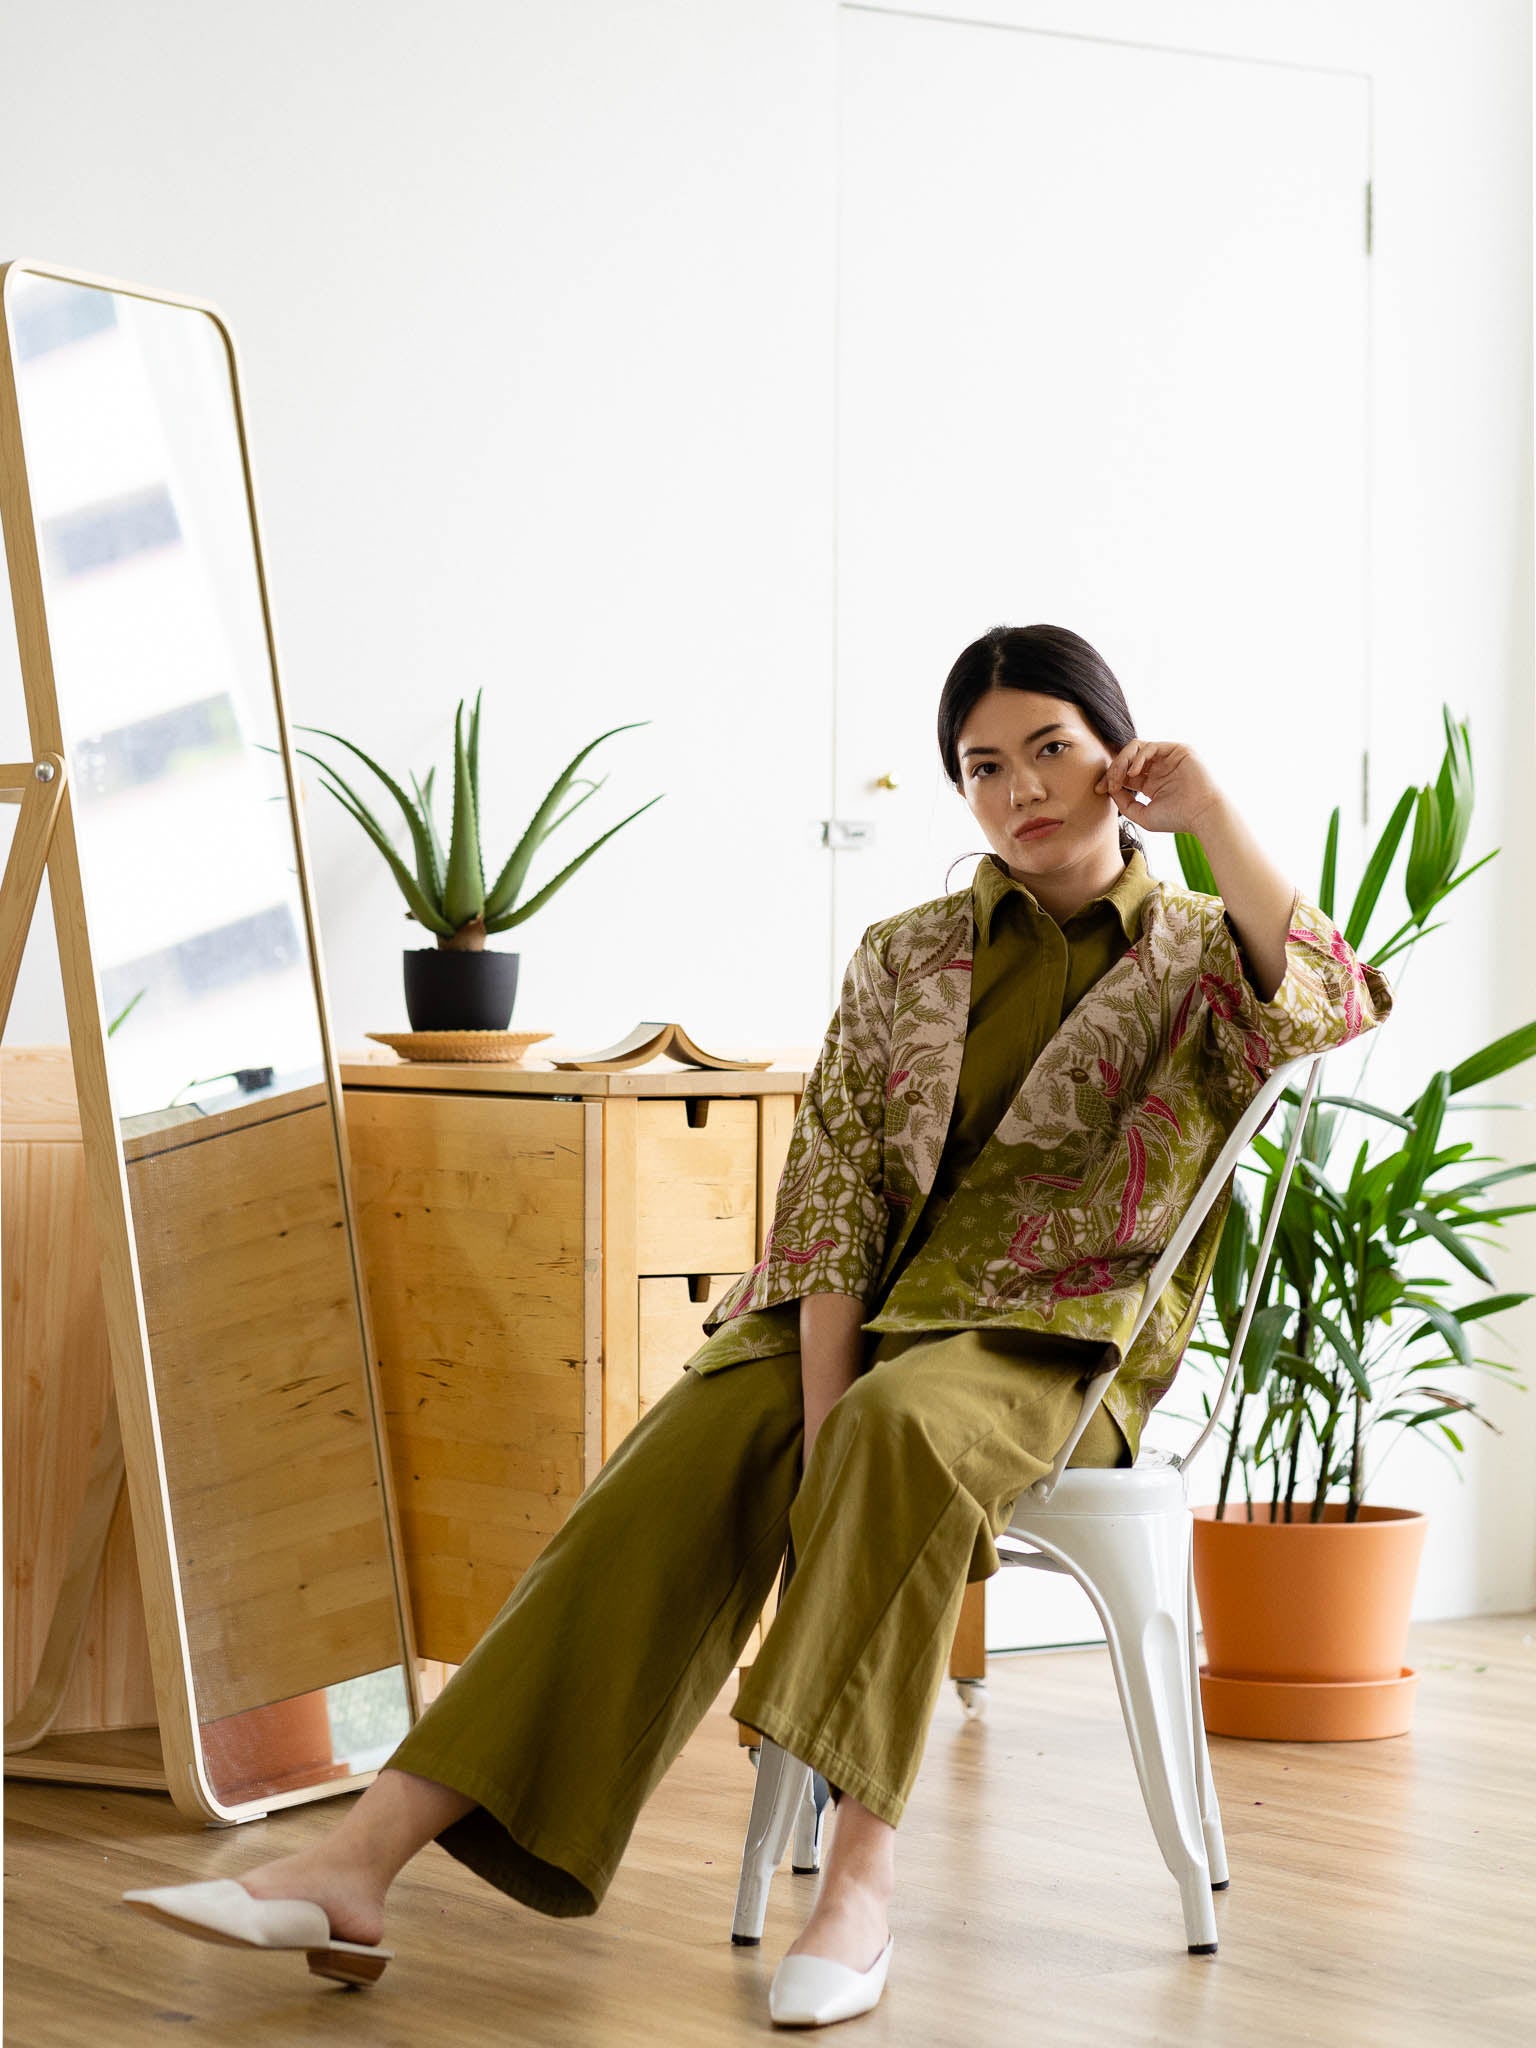 Batik Open Jacket | Vana from Singapore ethical designer Gypsied